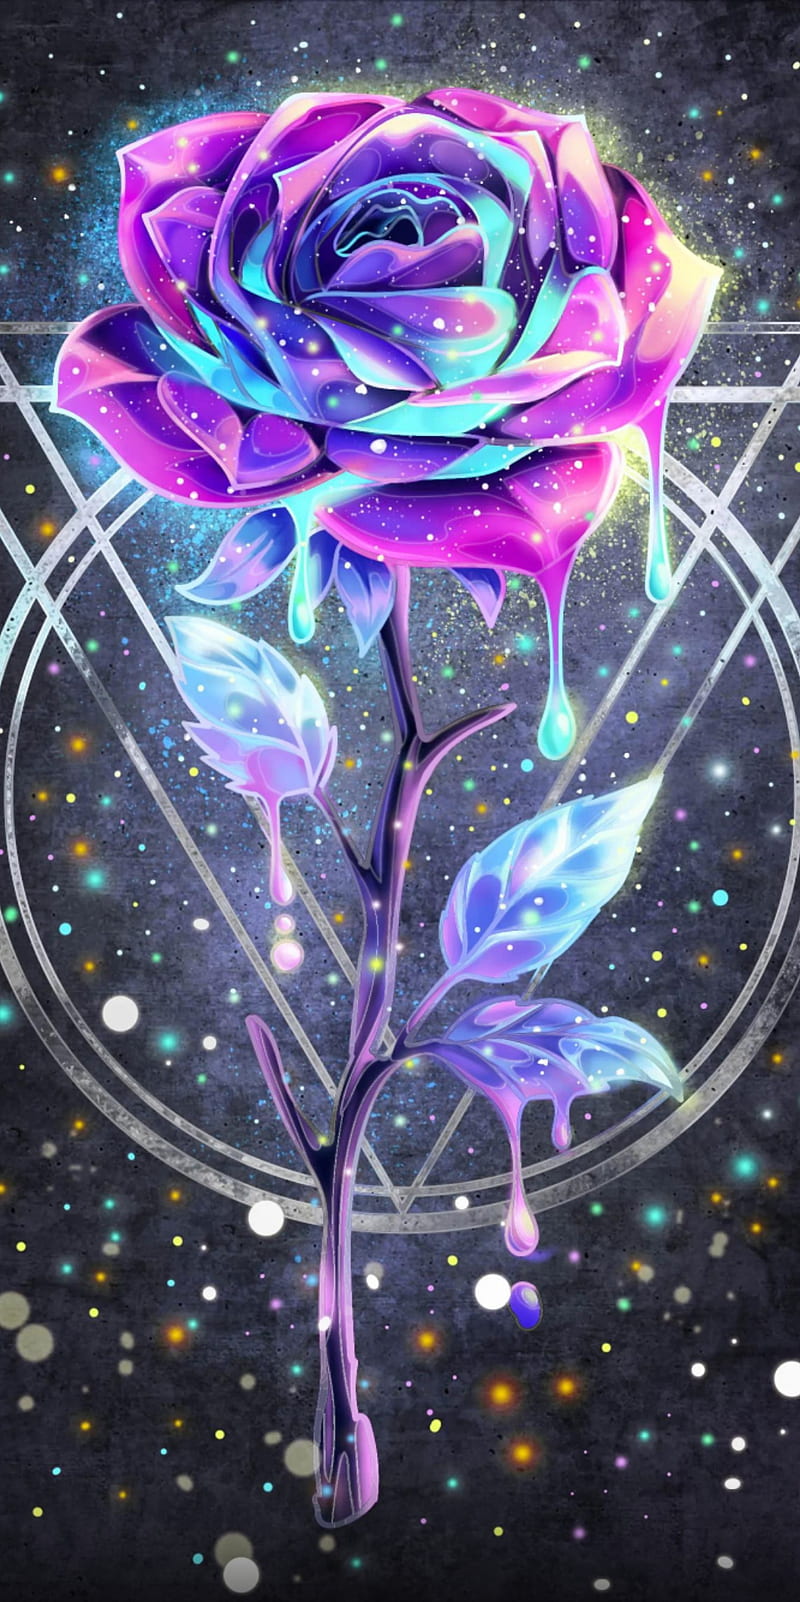  Wallpaper galaxy roses đẹp và tuyệt đẹp nhất